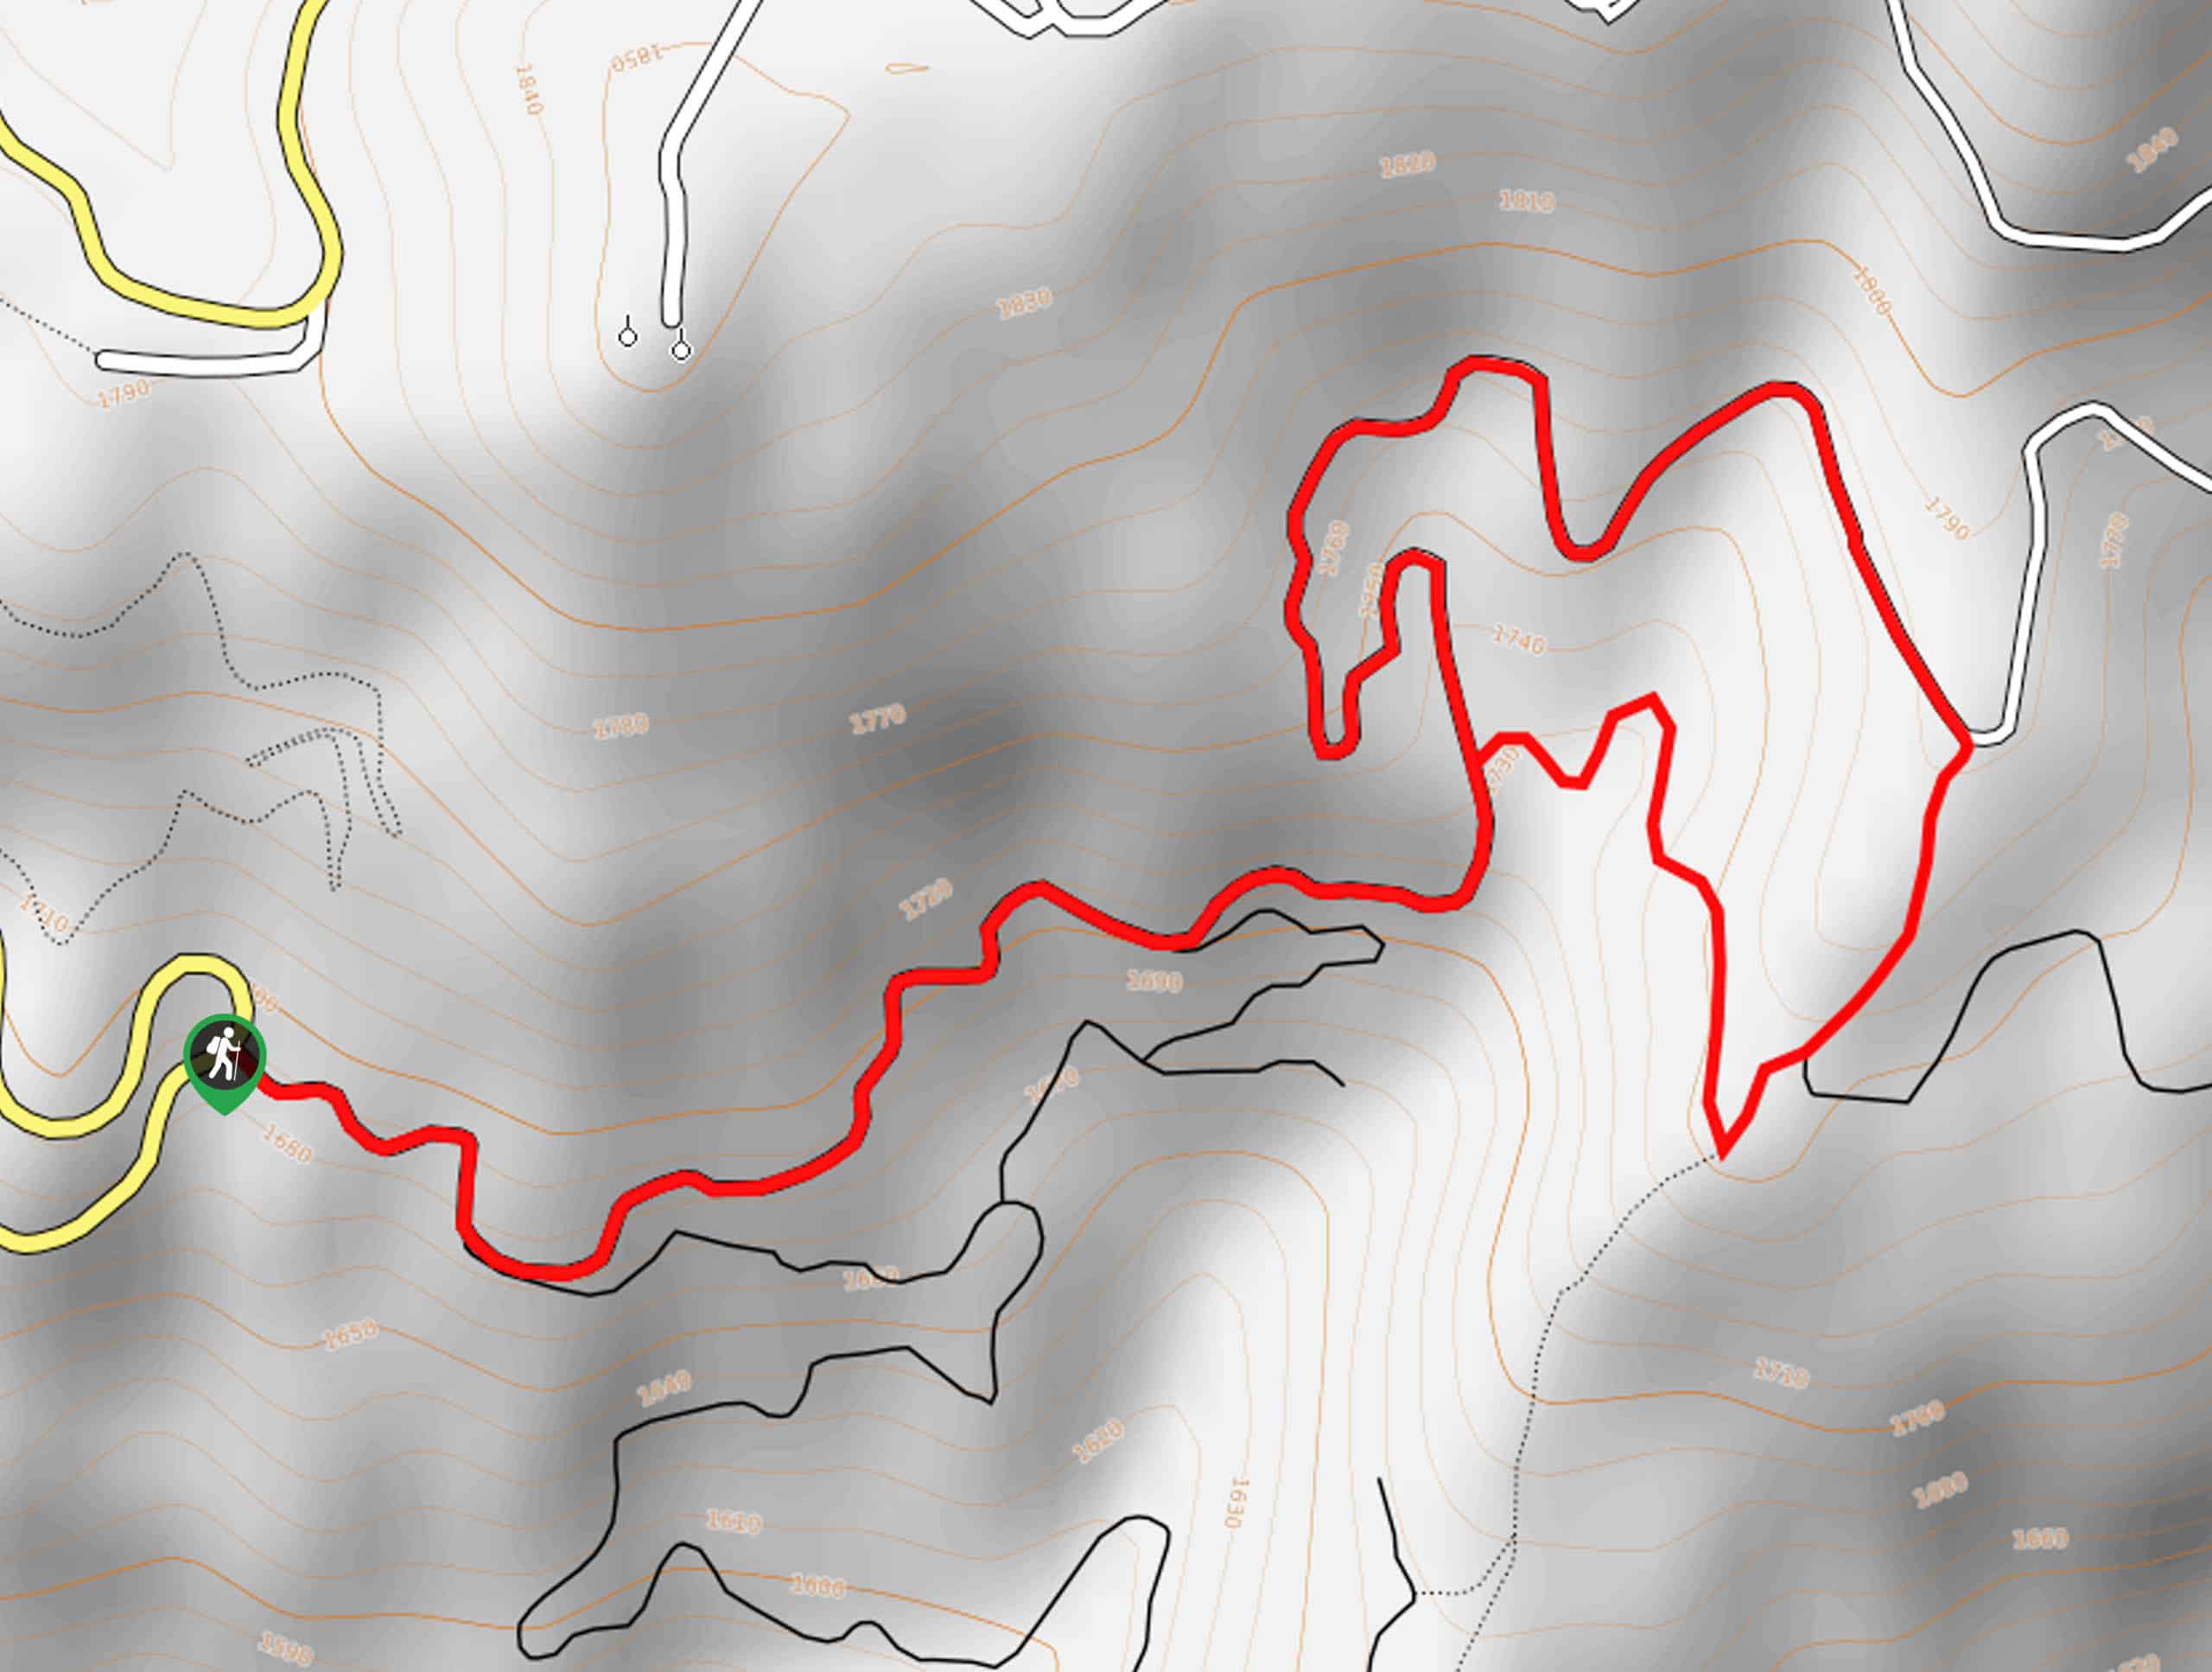 Snowshoe Hare Loop via Ponderosa Pine Overlook Hike Map